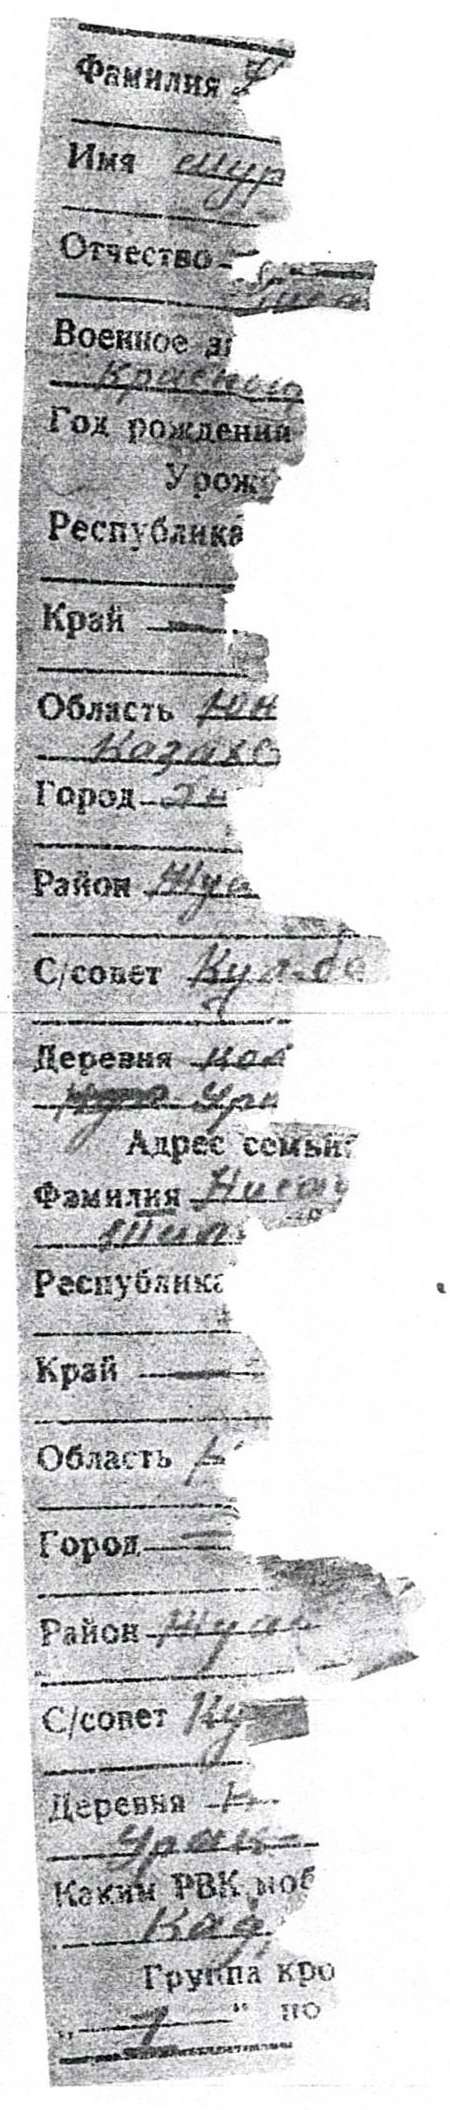 Медальон. Нысанбаев Мураталы. 1918 г.р. Казахстан.